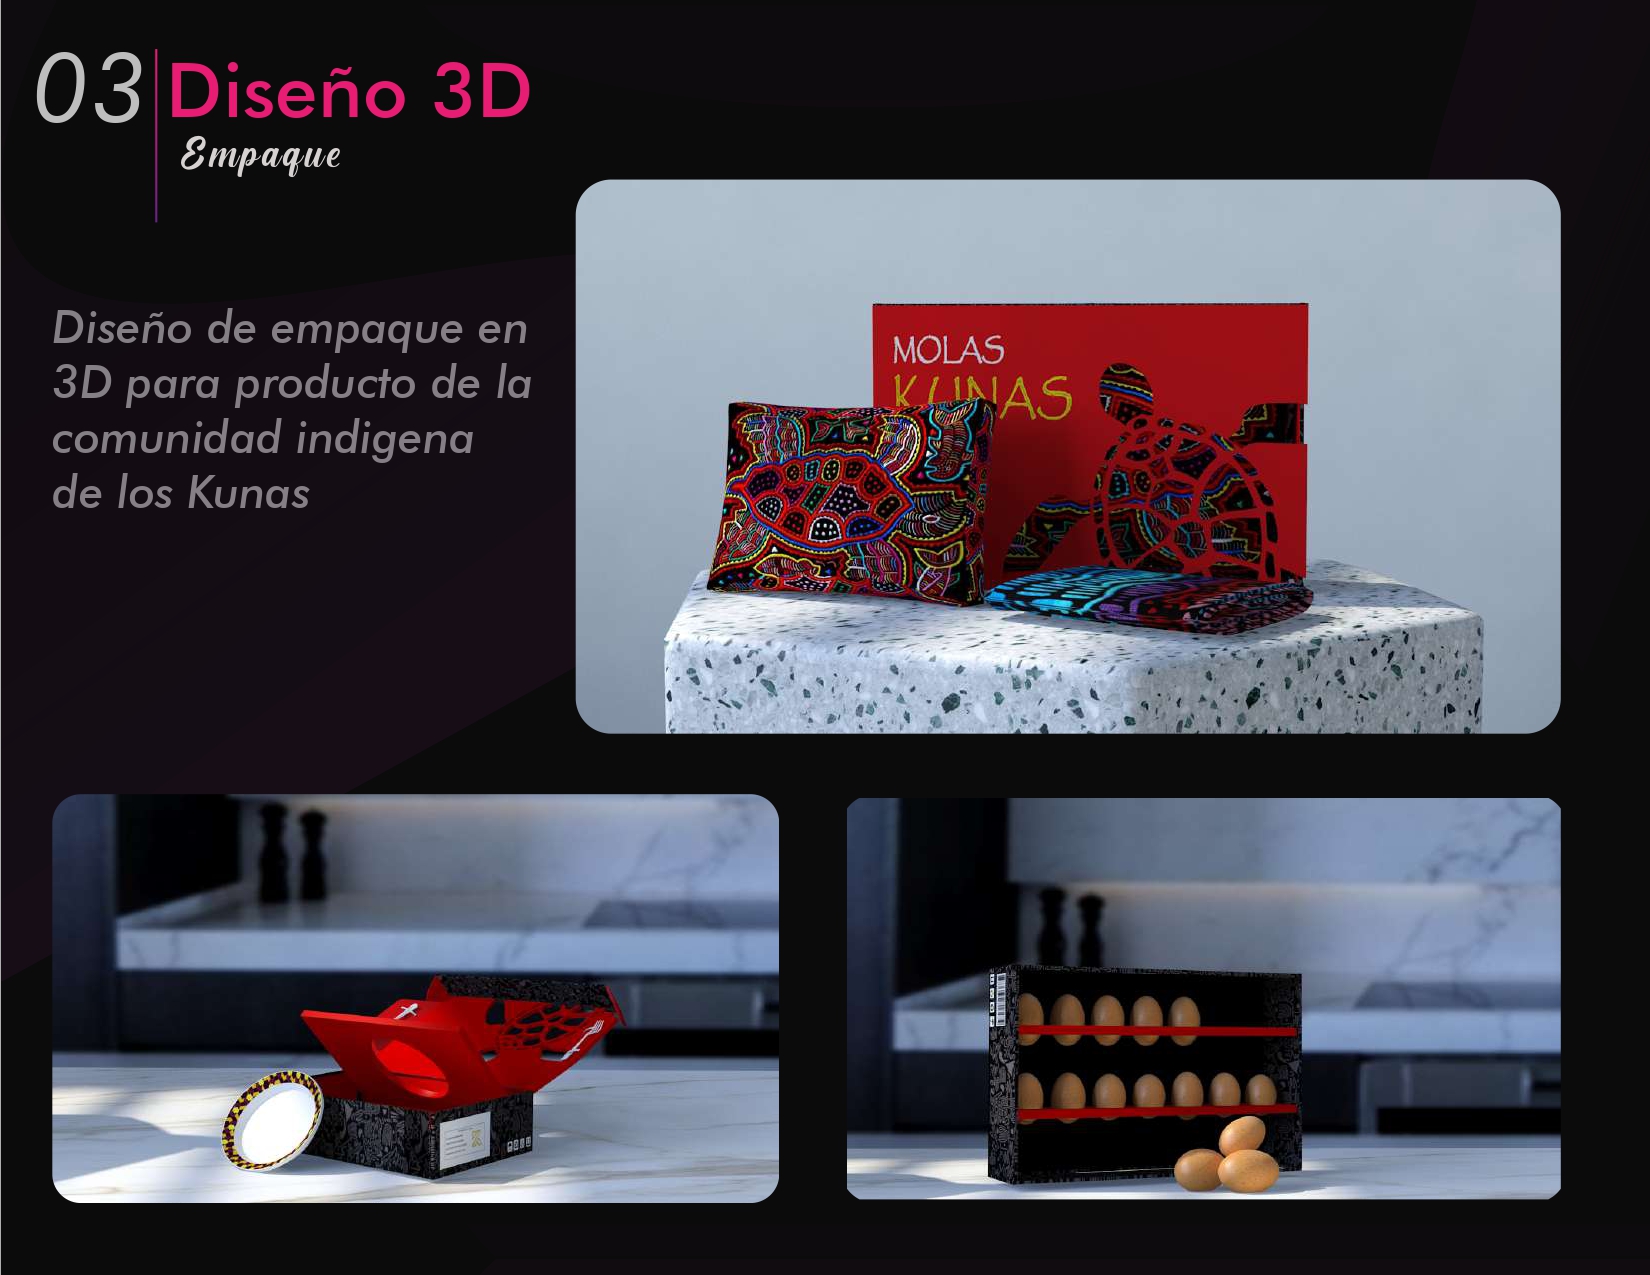 03/Disefo 3D

Empaque

Disefio de empaque en
3D para producto de la
comunidad indigena
de los Kunas

 

  

yo ooes

3
1
SEY TILL :